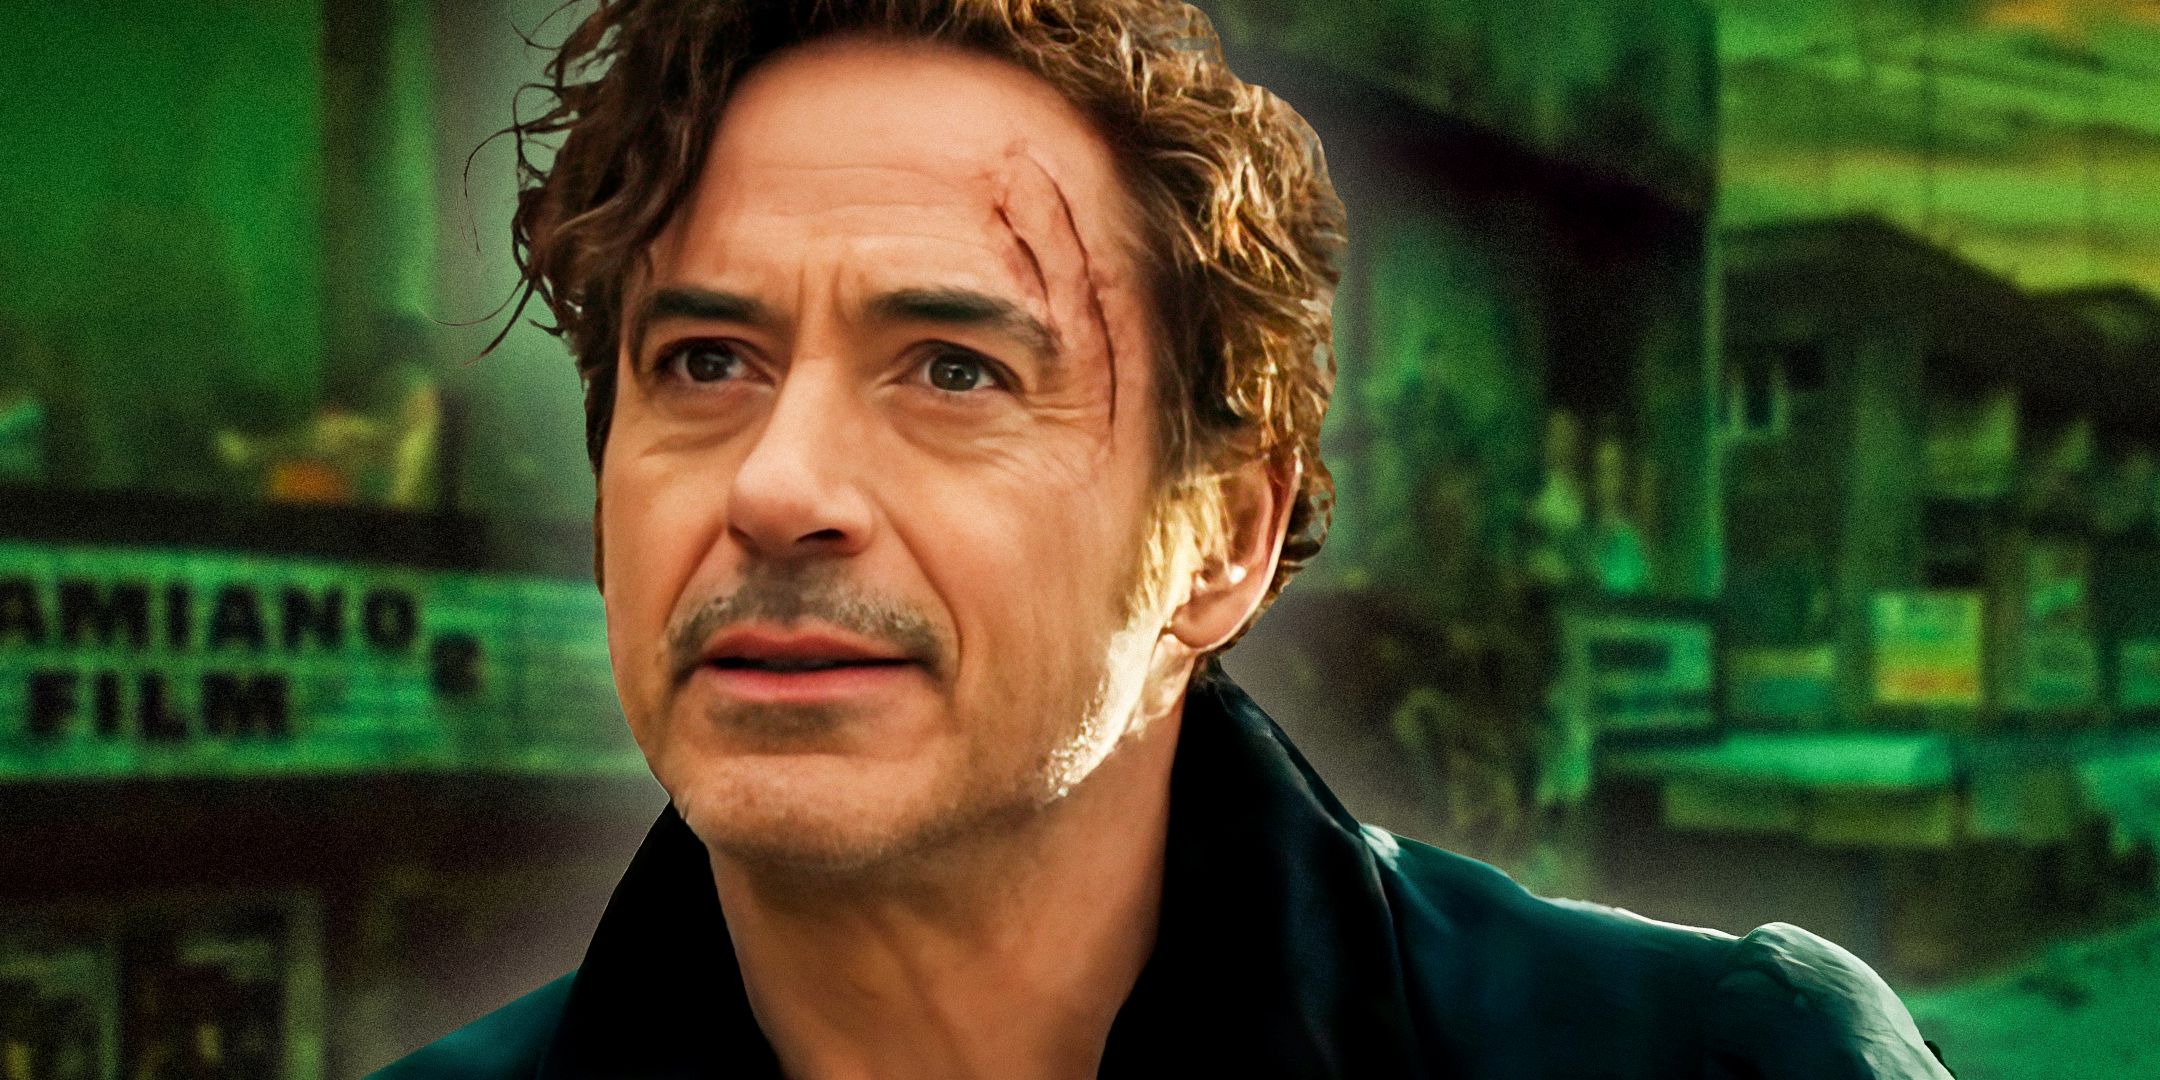 Una de las mejores actuaciones de Robert Downey Jr en años está siendo completamente ignorada